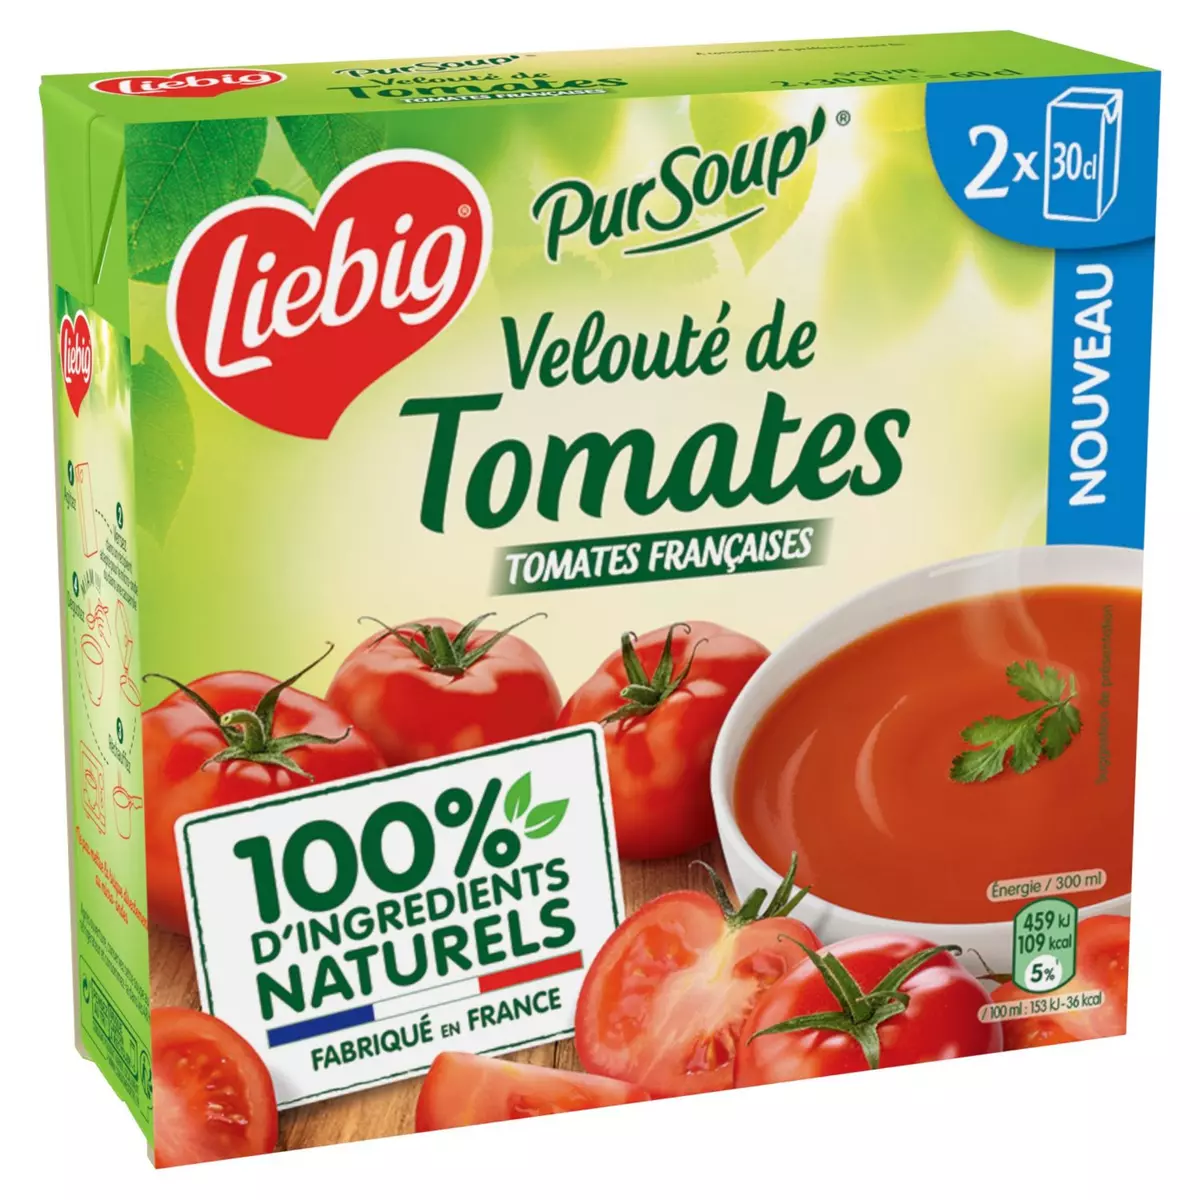 LIEBIG Soupe veloutée de tomates 2 personnes 2x30cl